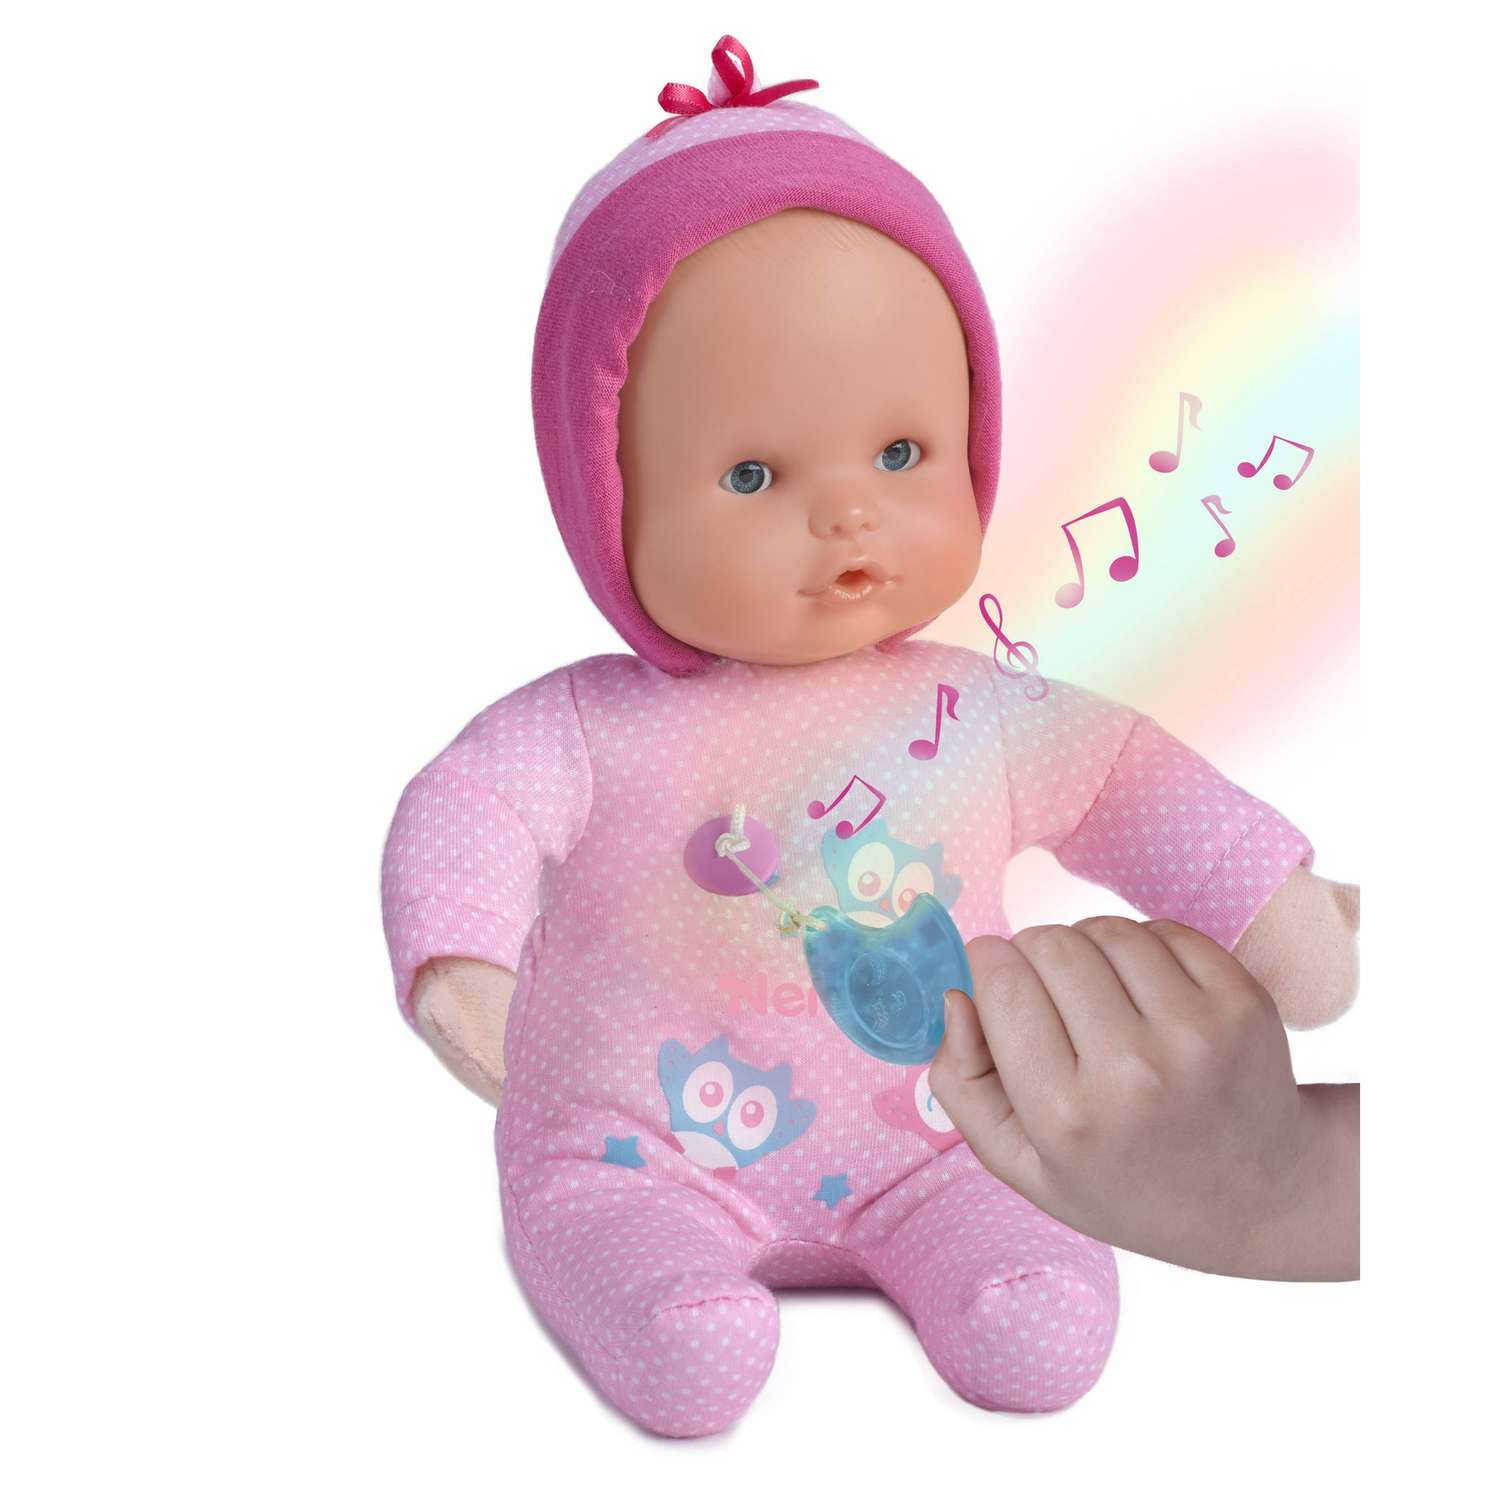 Кукла Famosa музыкальная Ненуко в ассортименте 700014038 70014038E8 - фото 7